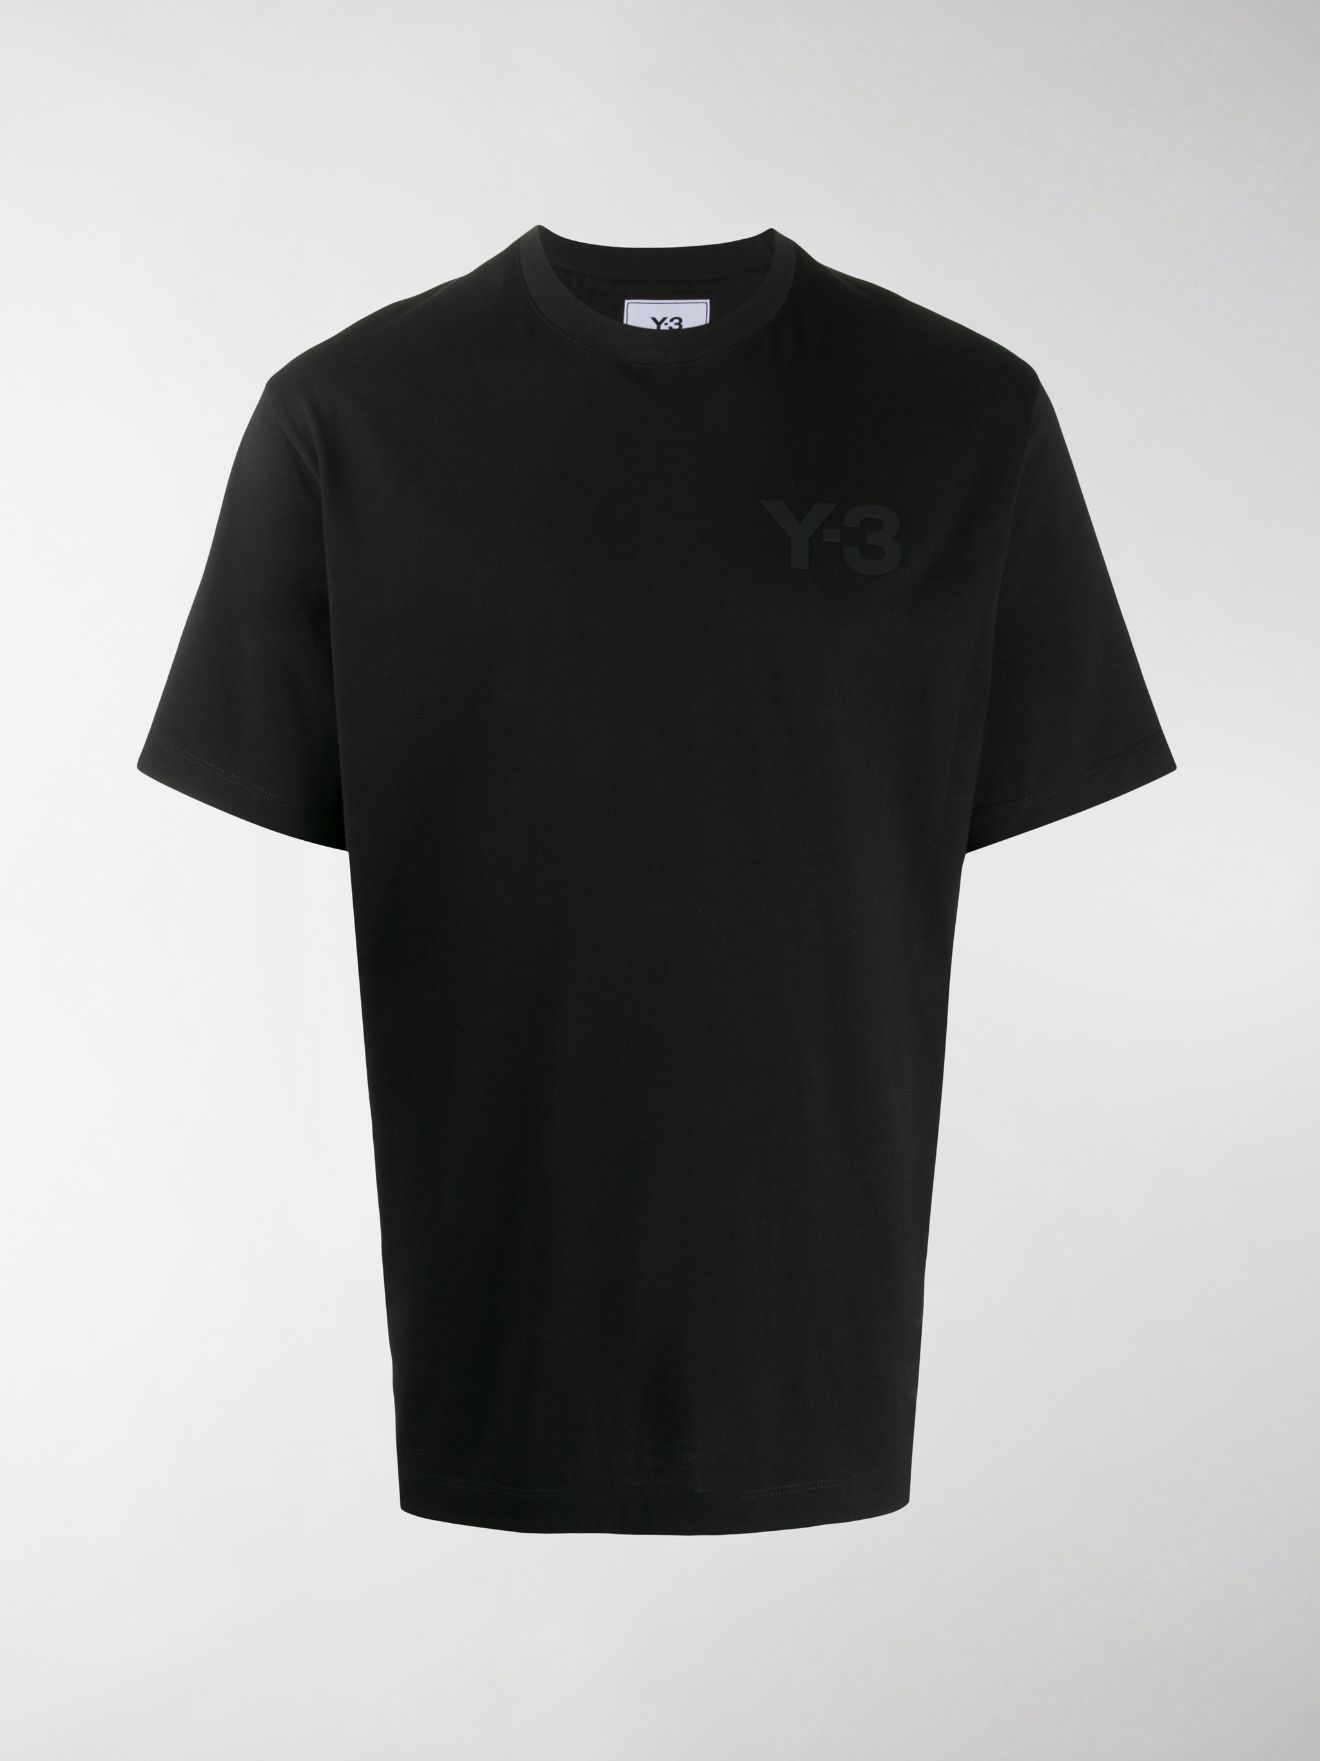 y3 tee shirt